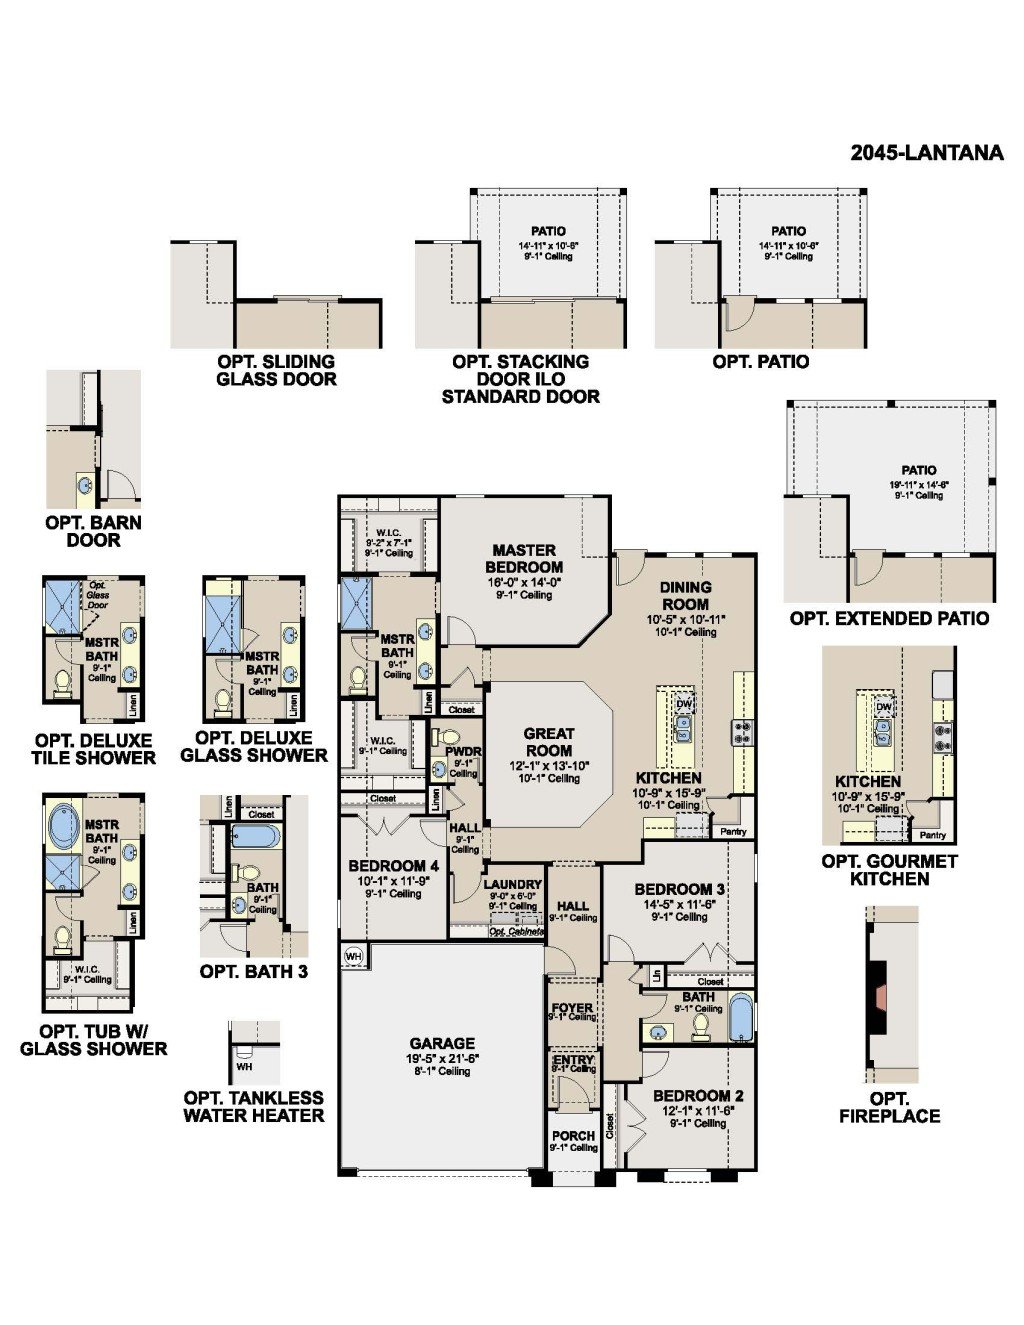 Lantana Home Design Layout - RGV